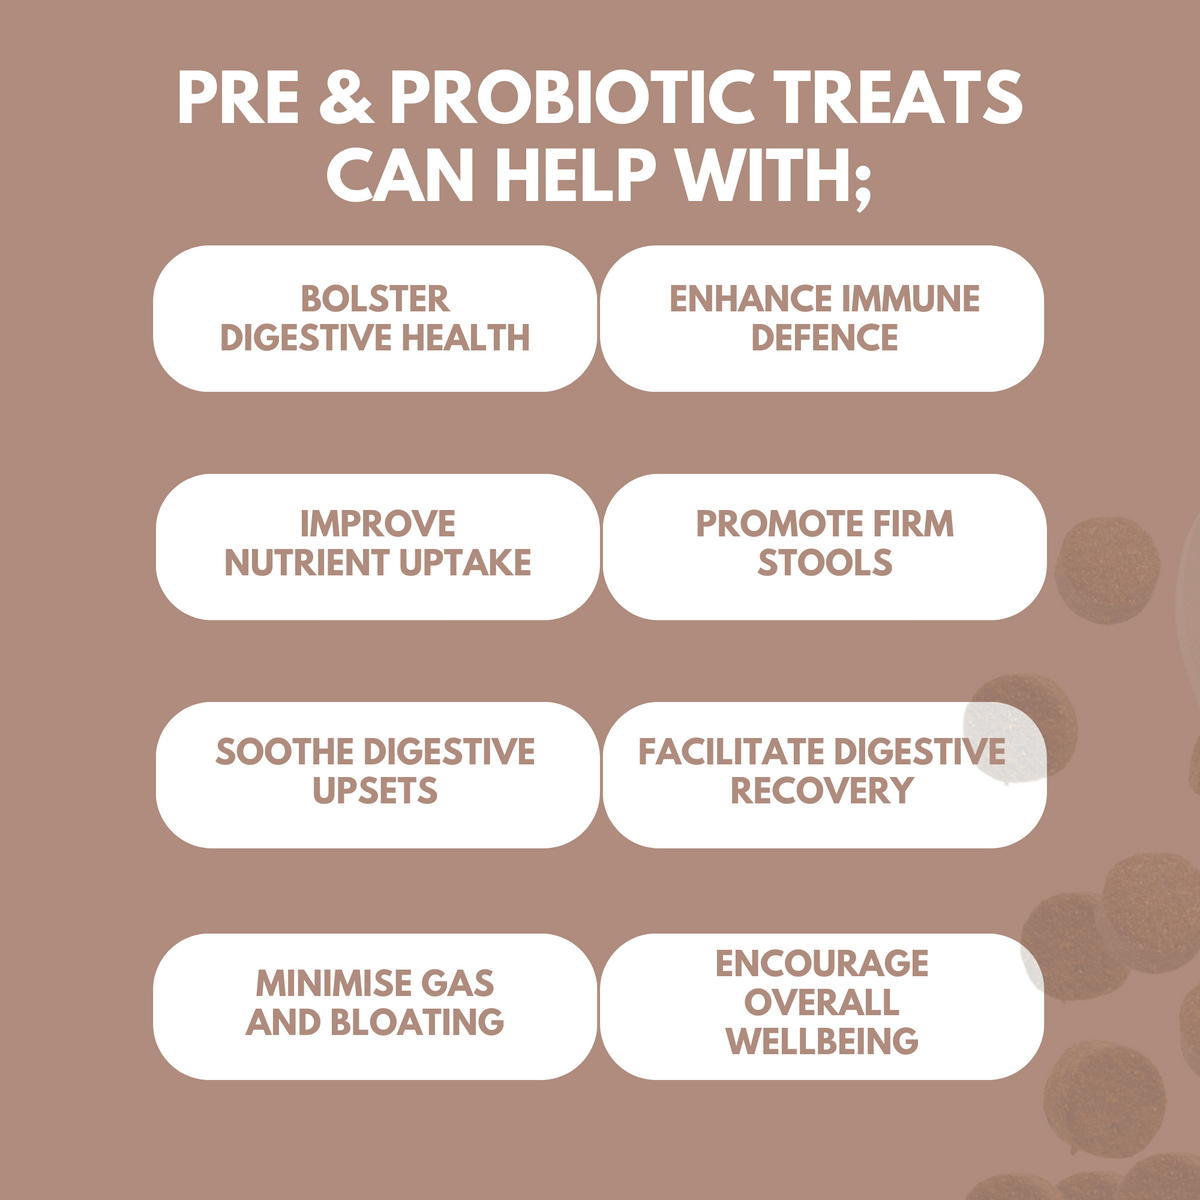 Pre & Probiotic Treats